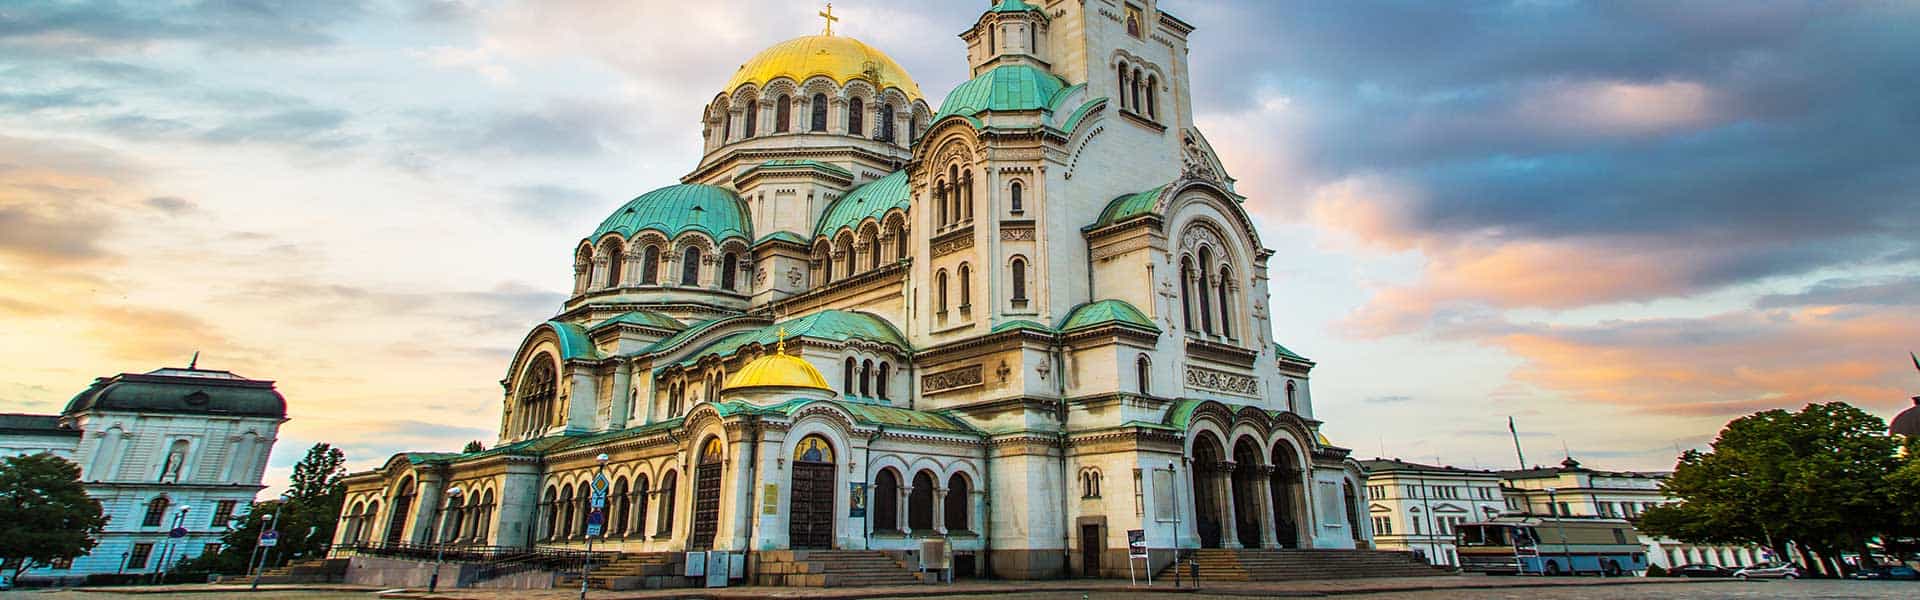 Blick auf die Alexander-Newski-Kathedrale in Bulgarien Sofia